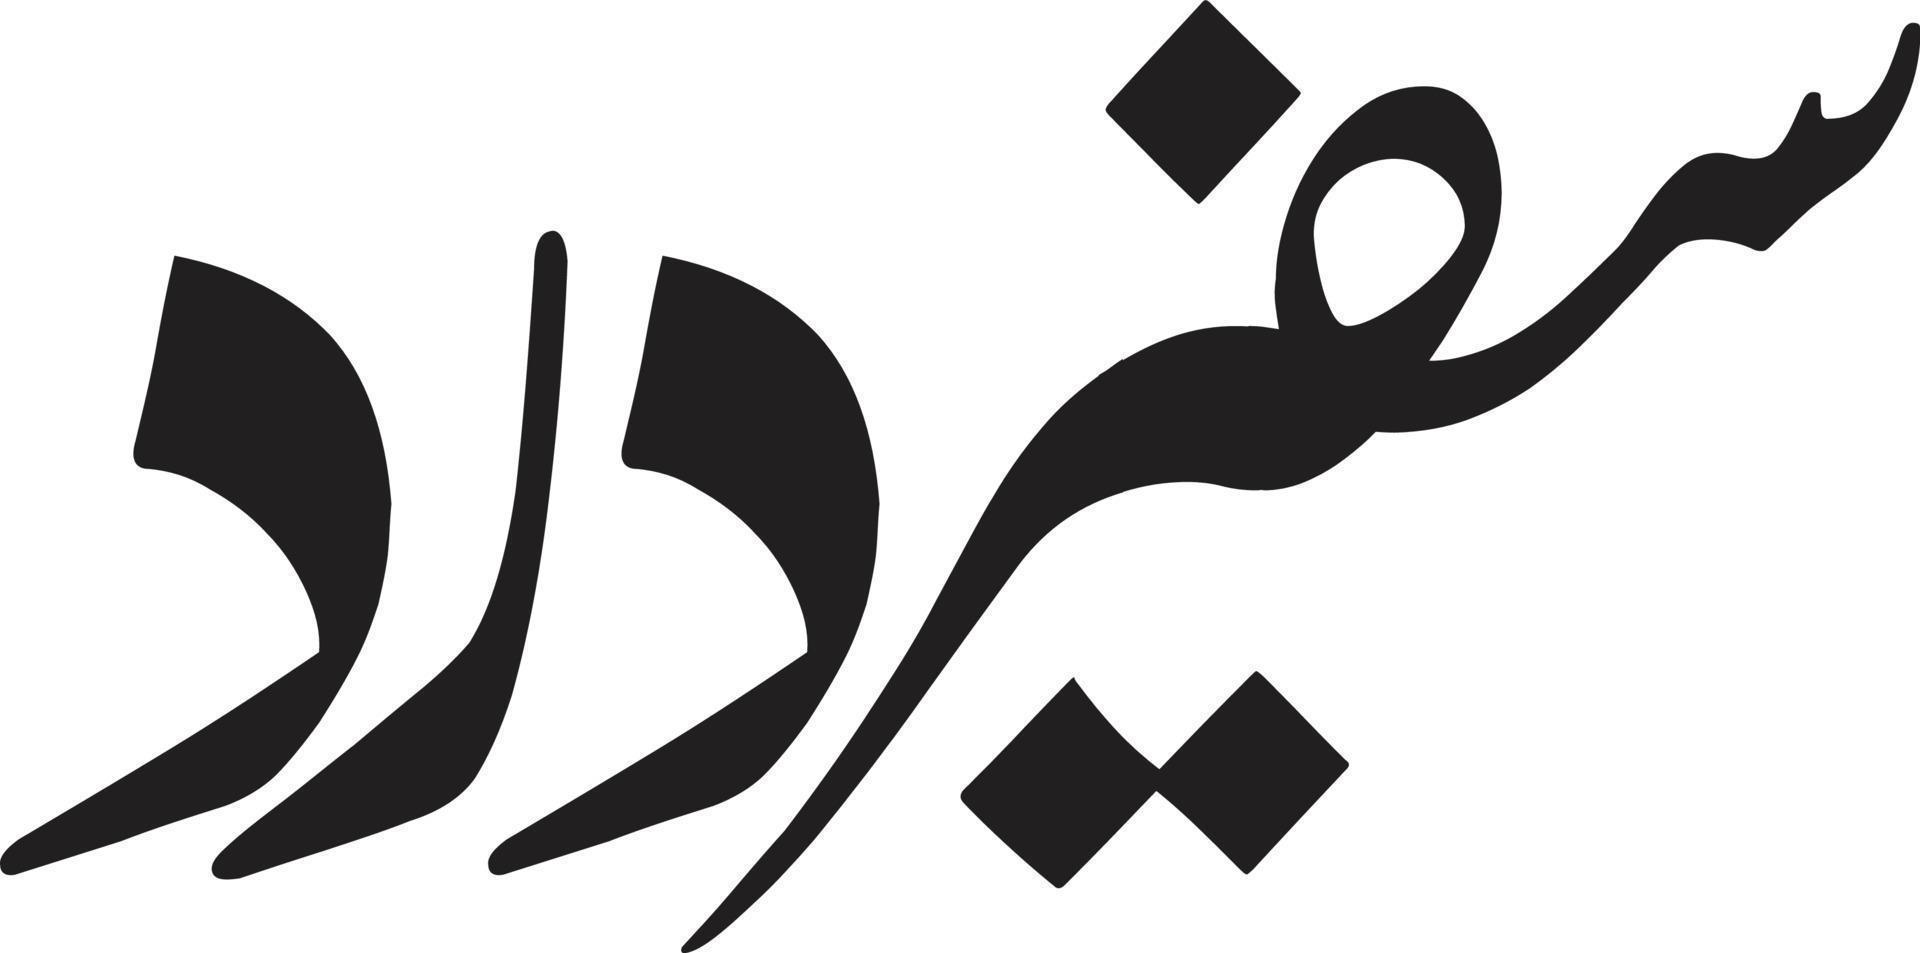 più sicuro derard titolo islamico urdu calligrafia gratuito vettore